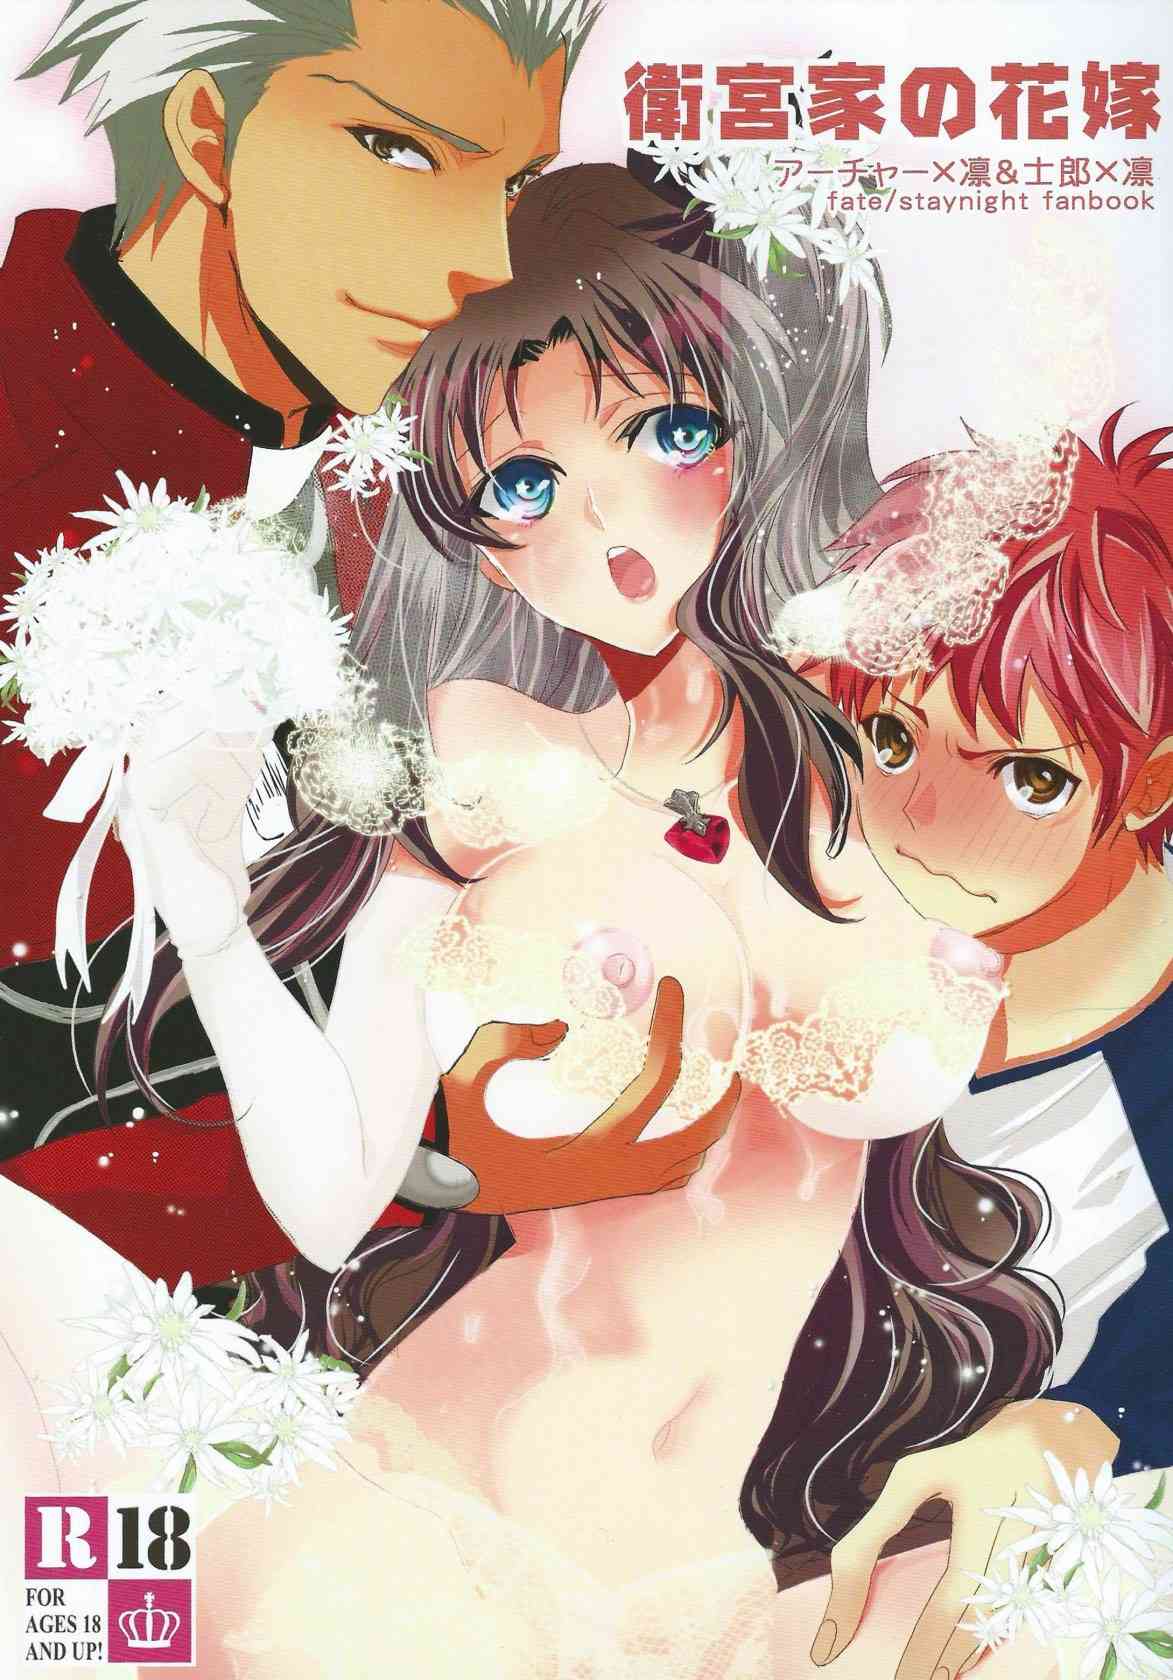 [Fate/staynightの同人誌]花嫁道具として連れて来られたアーチャーは、凛と士郎の初夜に手をかす事に。２人の深い愛に支えられ、凛は幸せの絶頂へ♪001